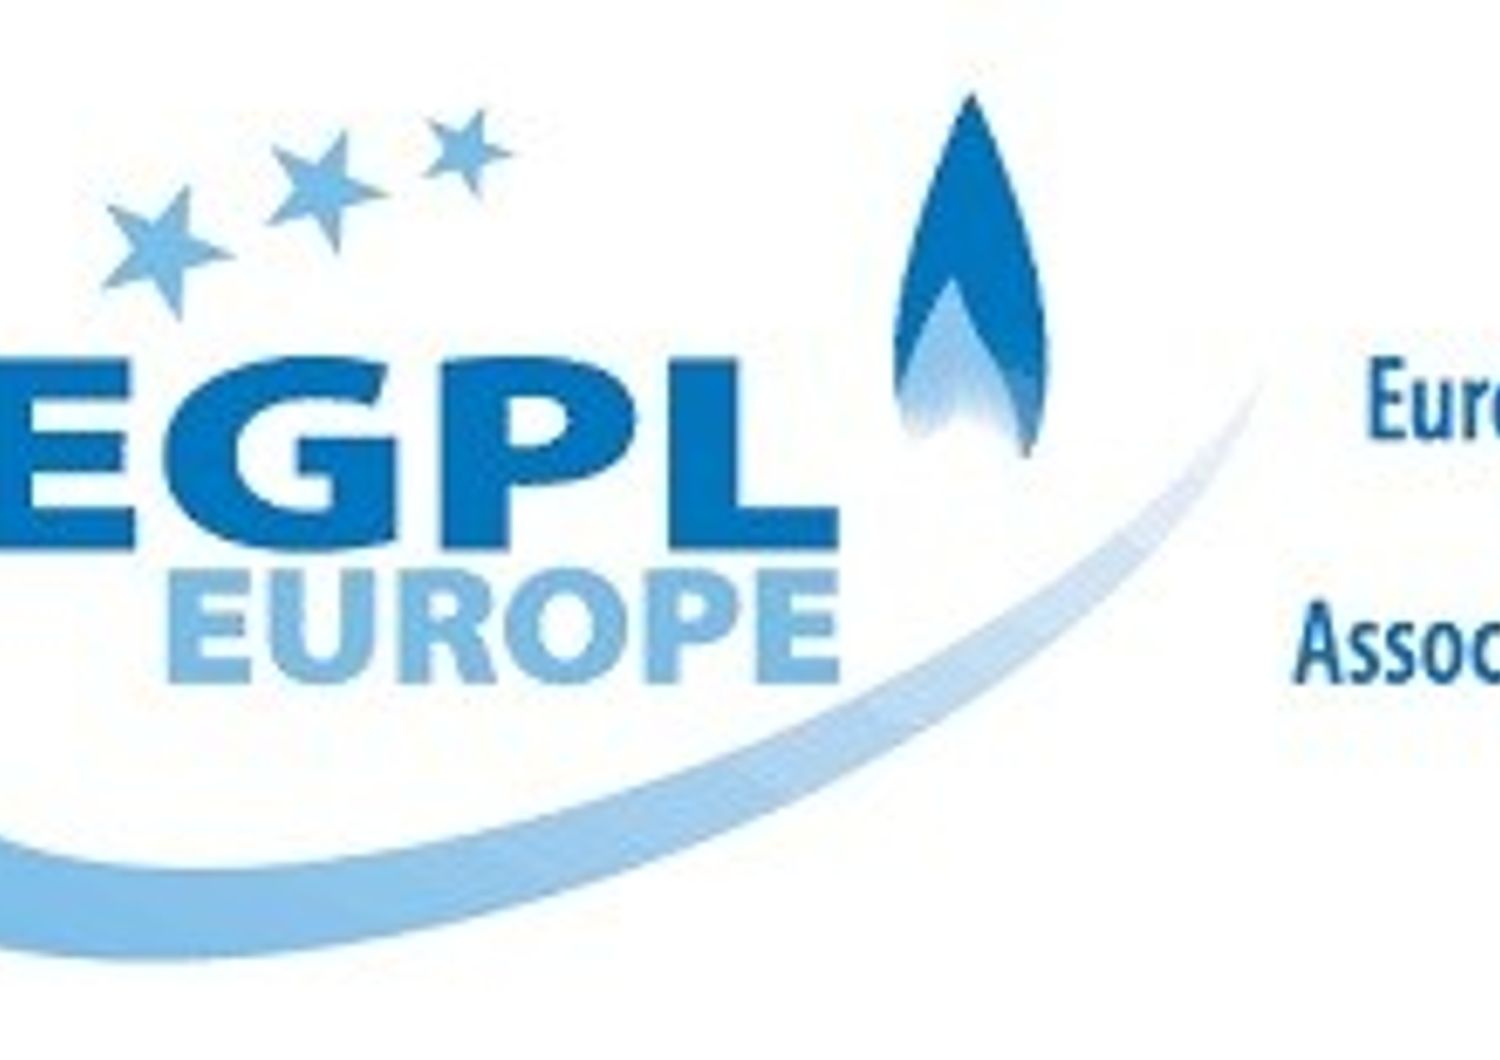 Europena Lpg Association (sito)